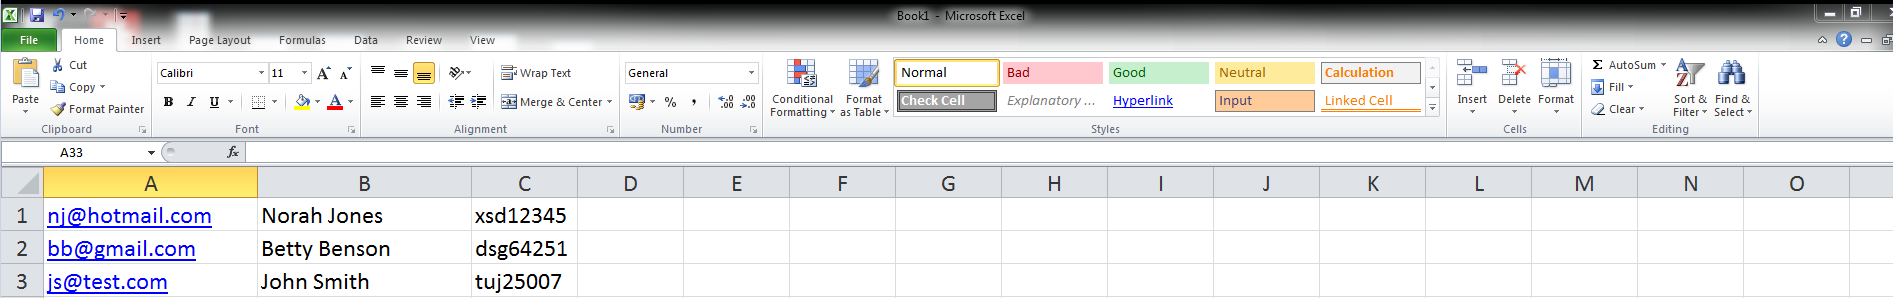 Ejemplo de hoja de cálculo de Microsoft Excel